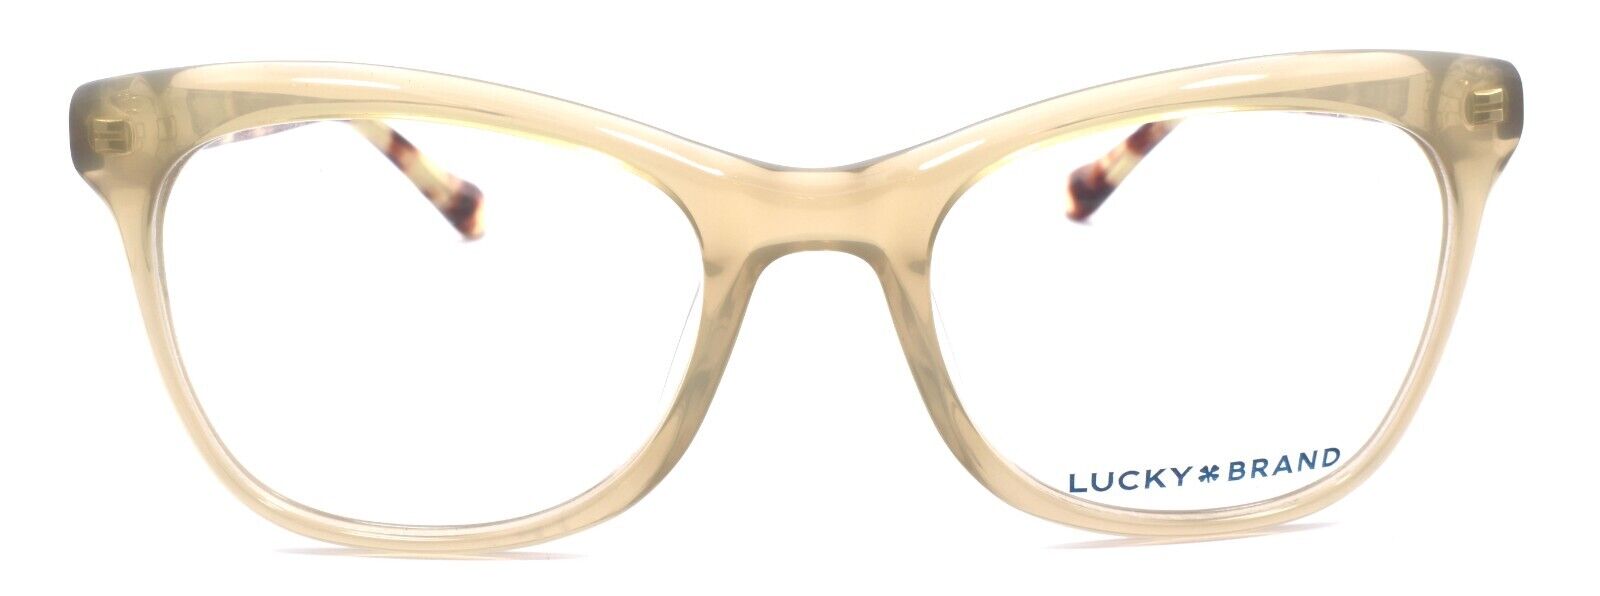 2-LUCKY BRAND D203 Women's Eyeglasses Frames Cat Eye 53-20-140 Brown-751286289978-IKSpecs